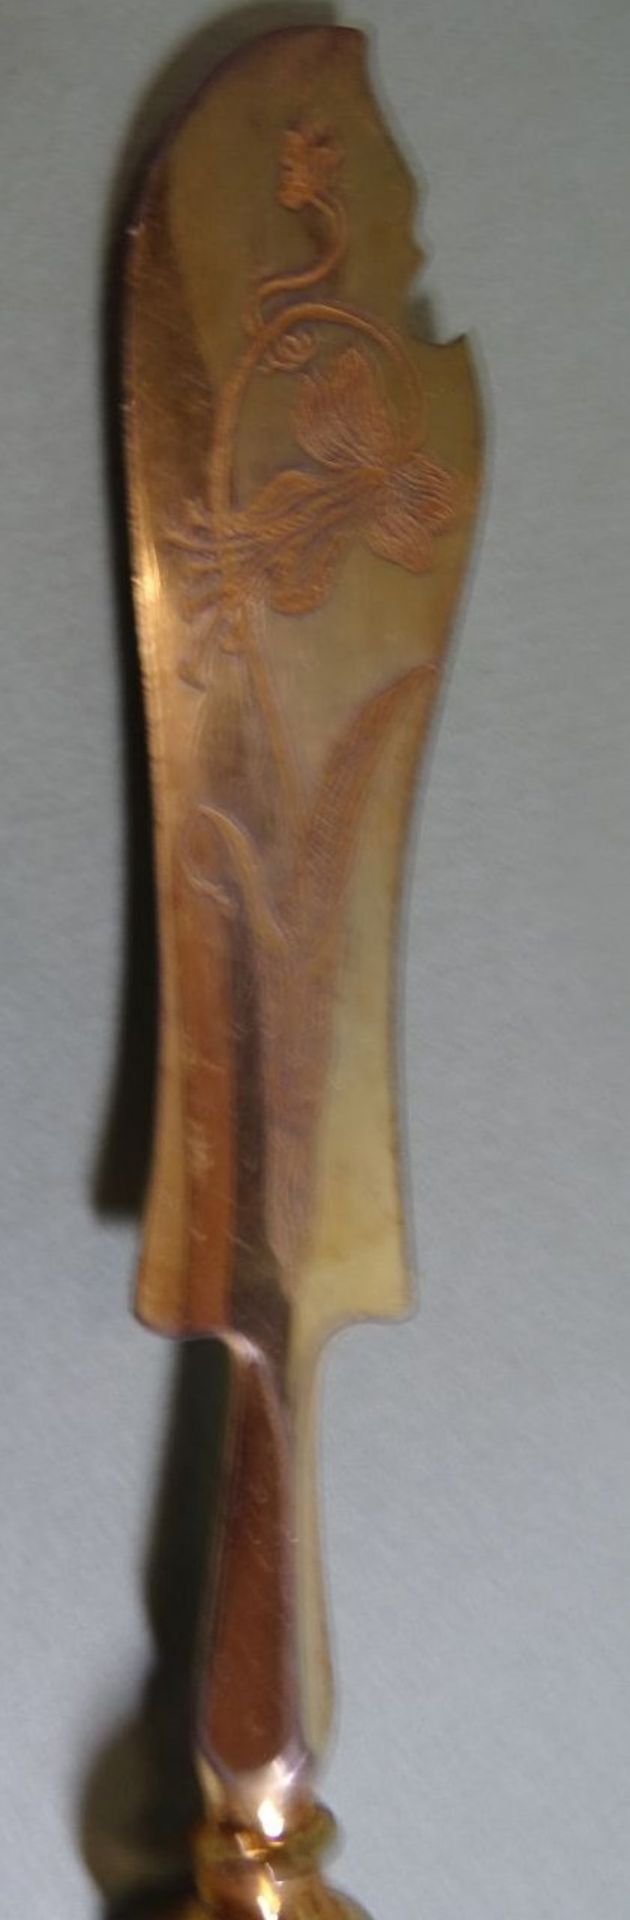 Buttermesser, S-800-, Klinge vergoldet, L-21 cm, 57 gr. - Bild 2 aus 5